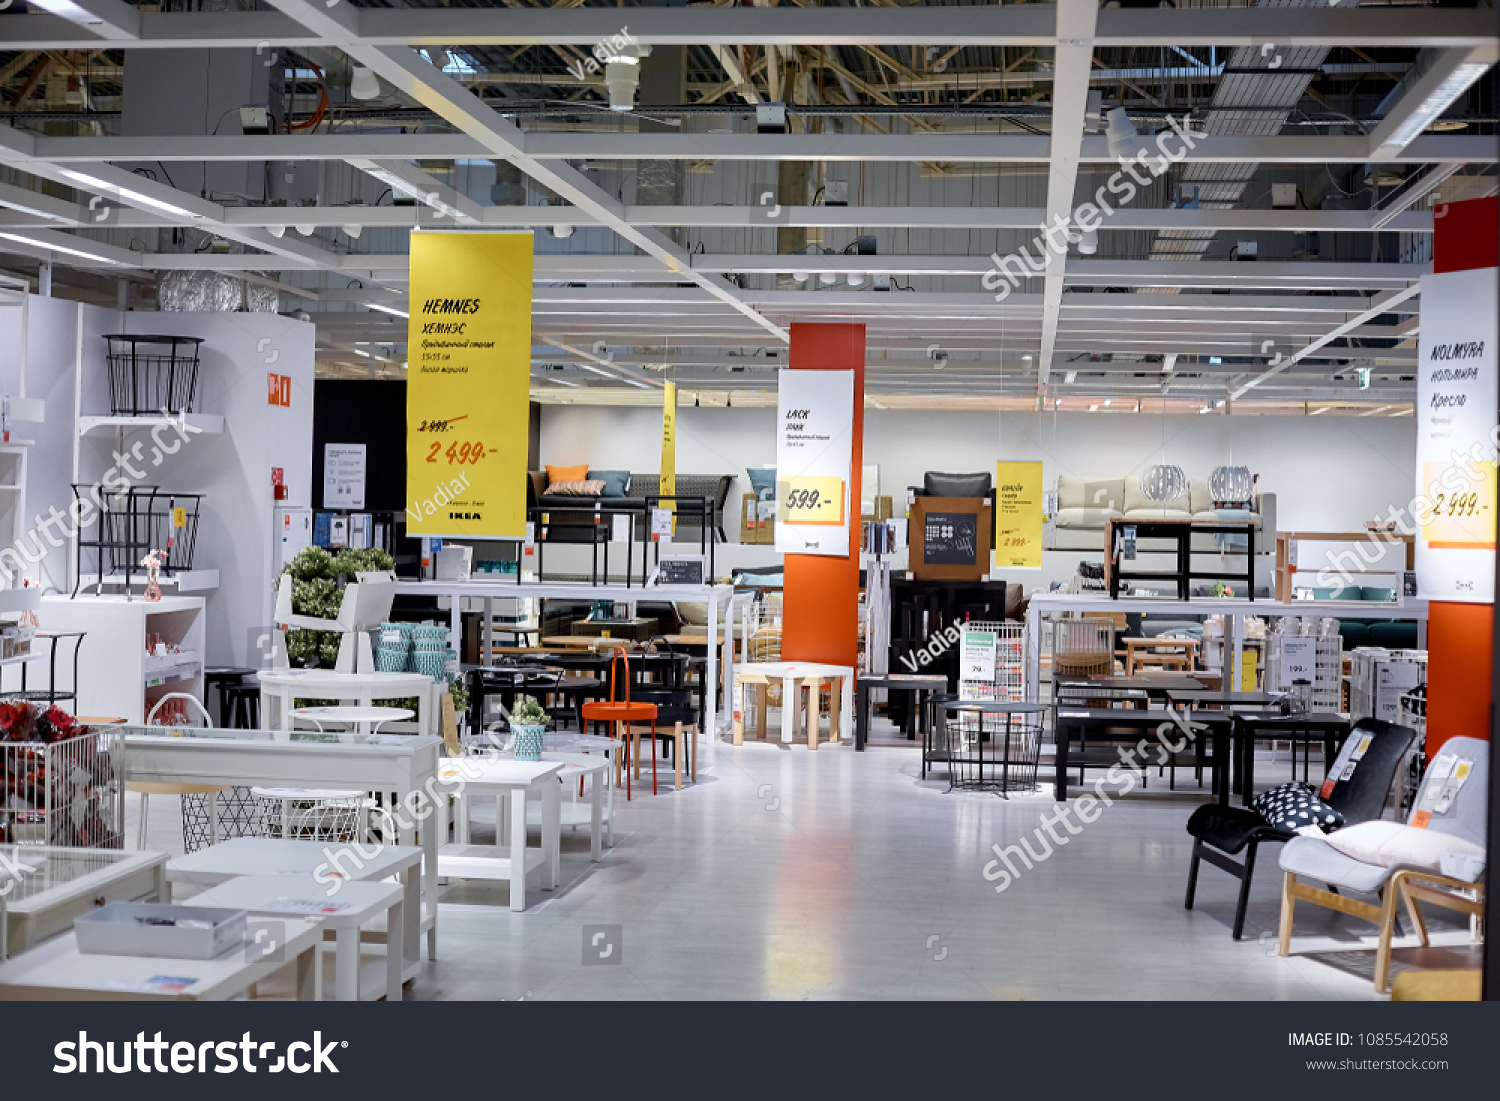 7,765 Ikea inside Images, Stock Photos & Vectors | Shutterstock